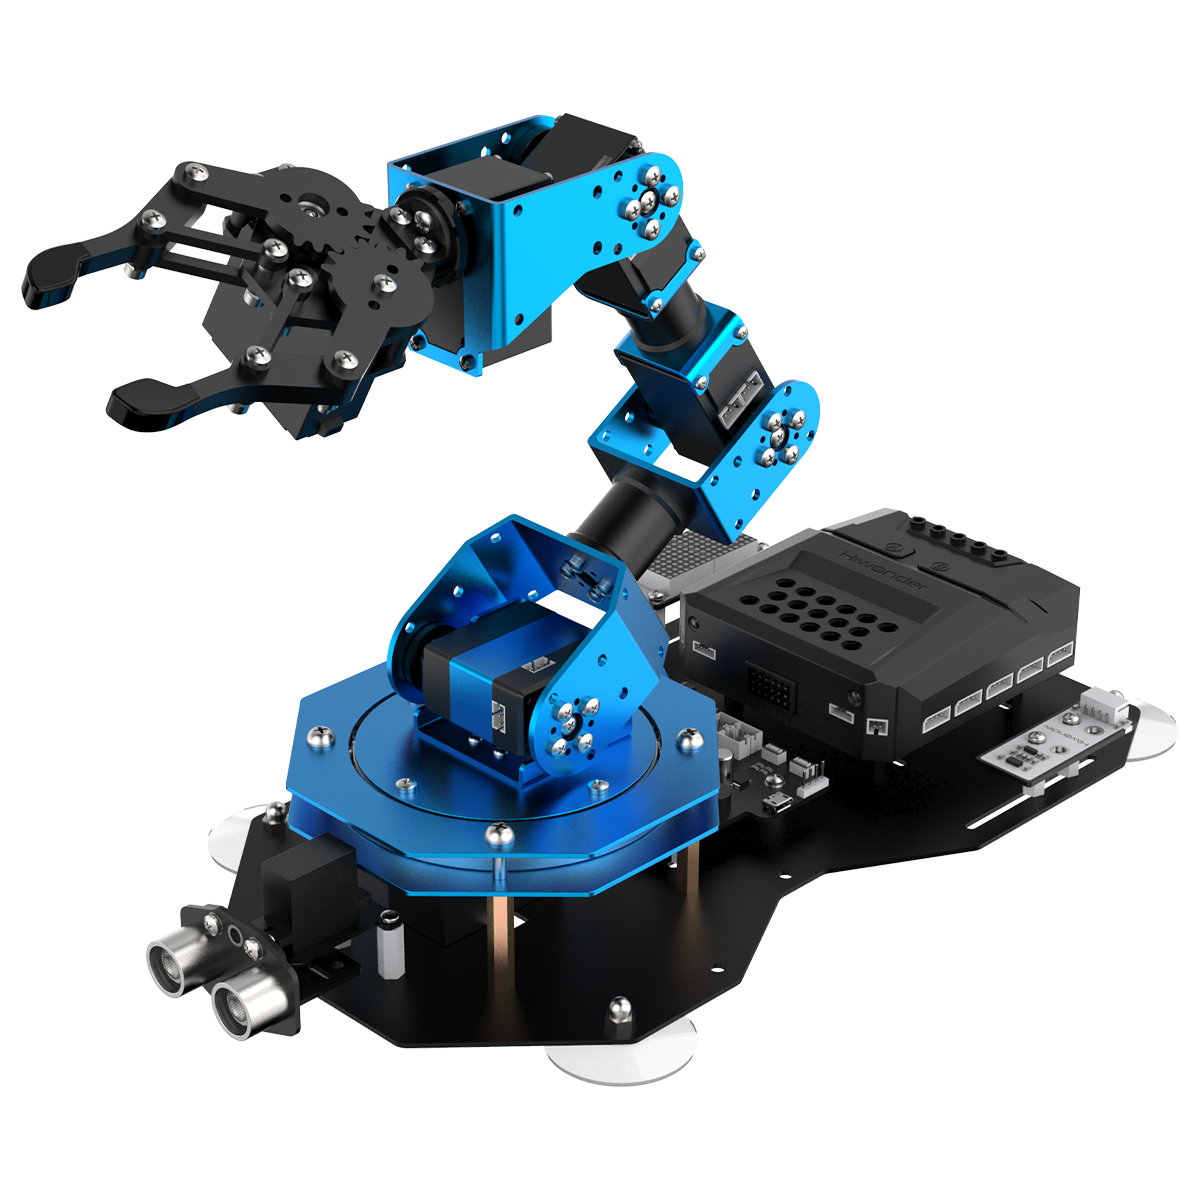 xArm2.0 6 DOF Robot Arm Mechanical Assembled For Scratch Python Programming  tps